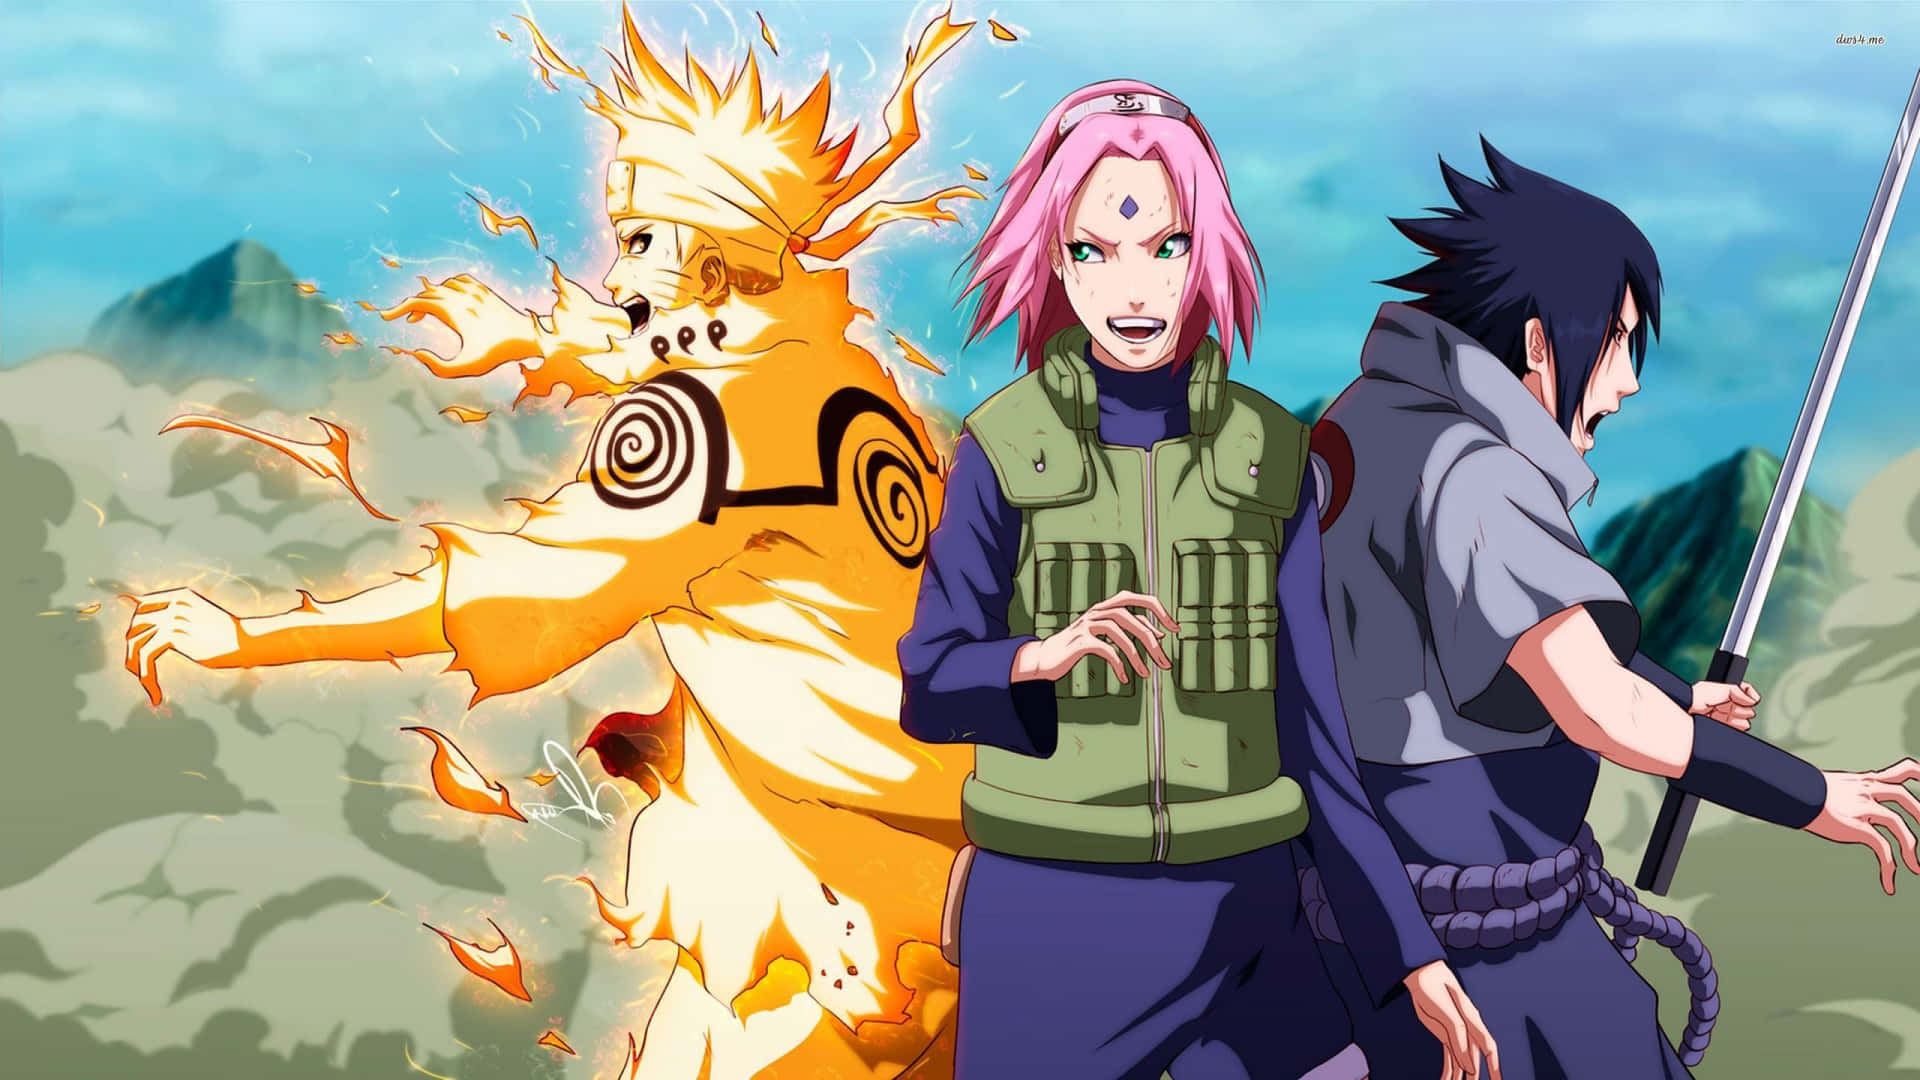 Kakashi,naruto, Sasuke E Sakura: Uma Equipe Poderosa. Papel de Parede